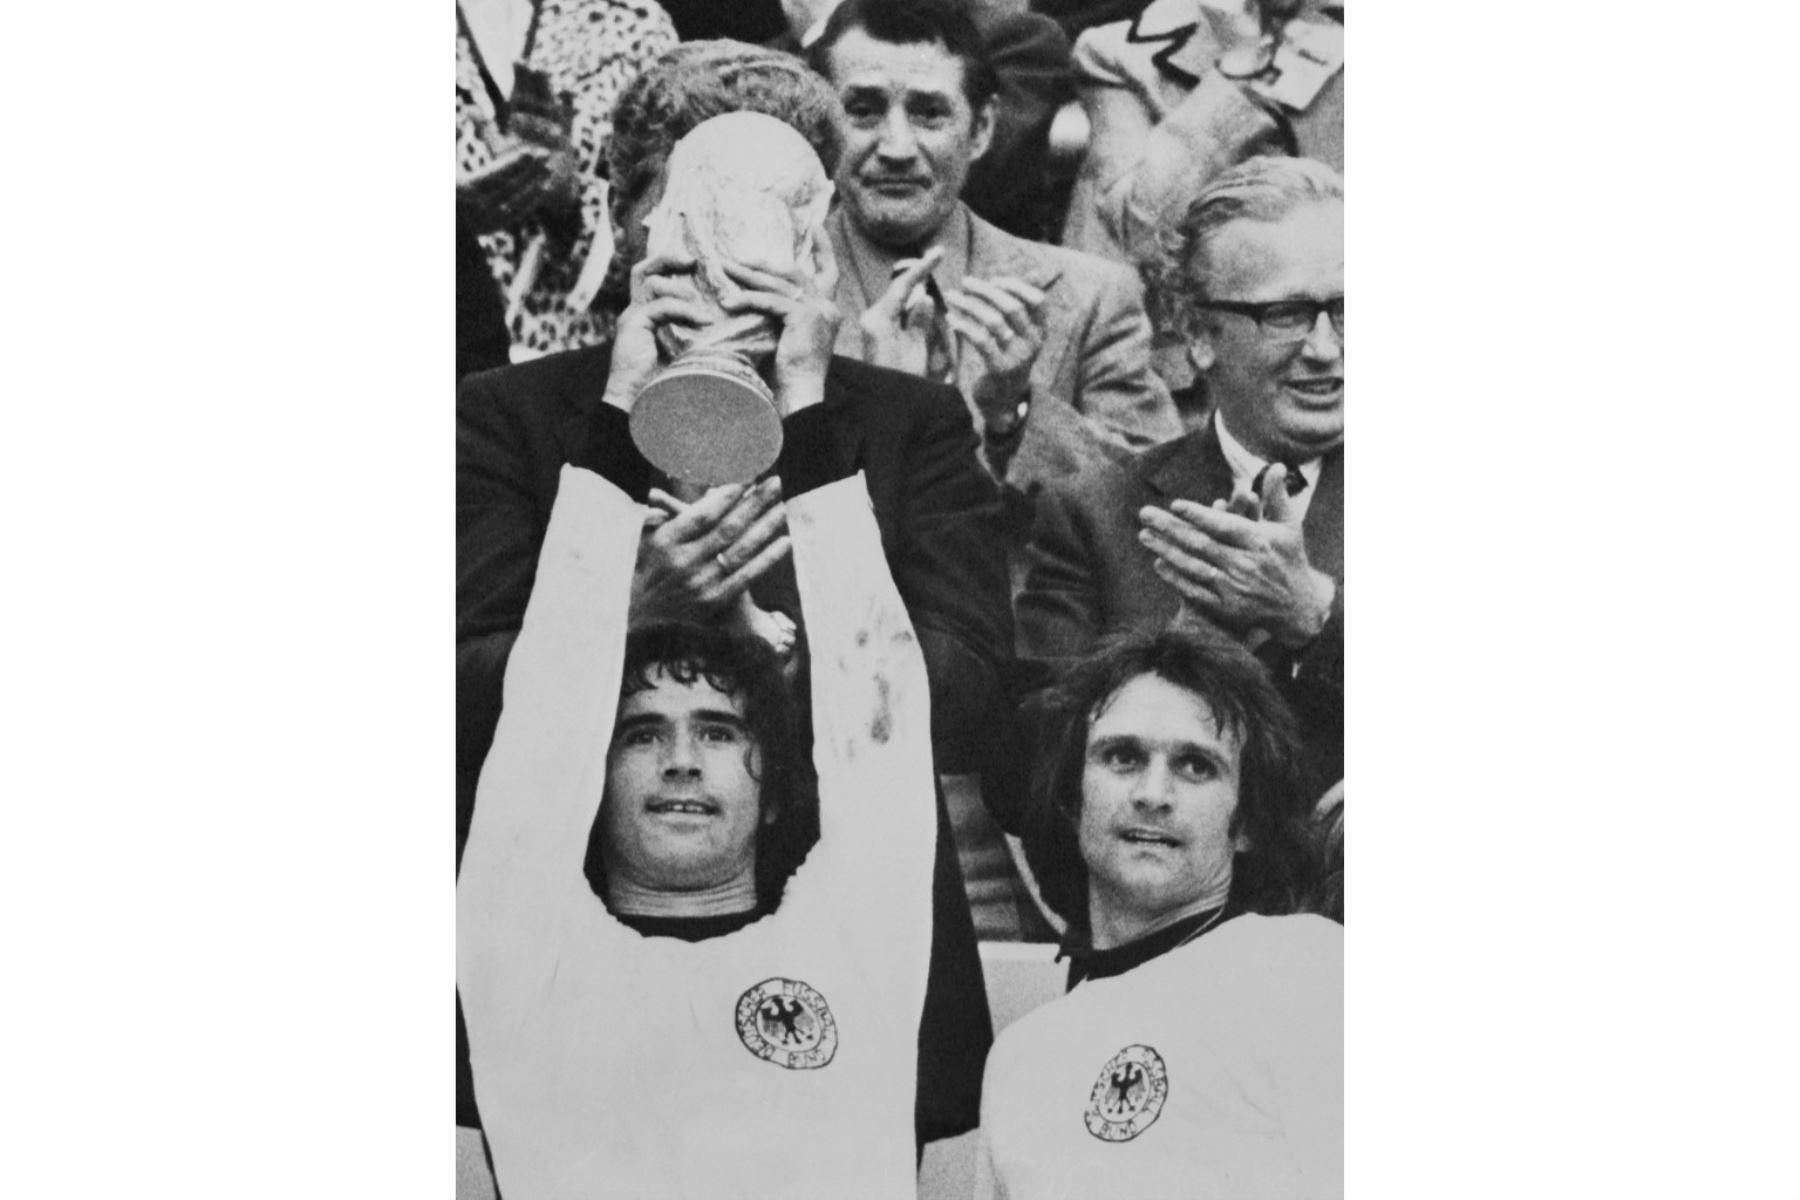 El alemán occidental Gerd Müller levanta la Copa del Mundo después de convertirse en campeón del mundo en la final de la Copa del Mundo de fútbol "Alemania Occidental - Holanda" en el Estadio Olímpico de Múnich el 7 de julio de 1974. Foto: AFP